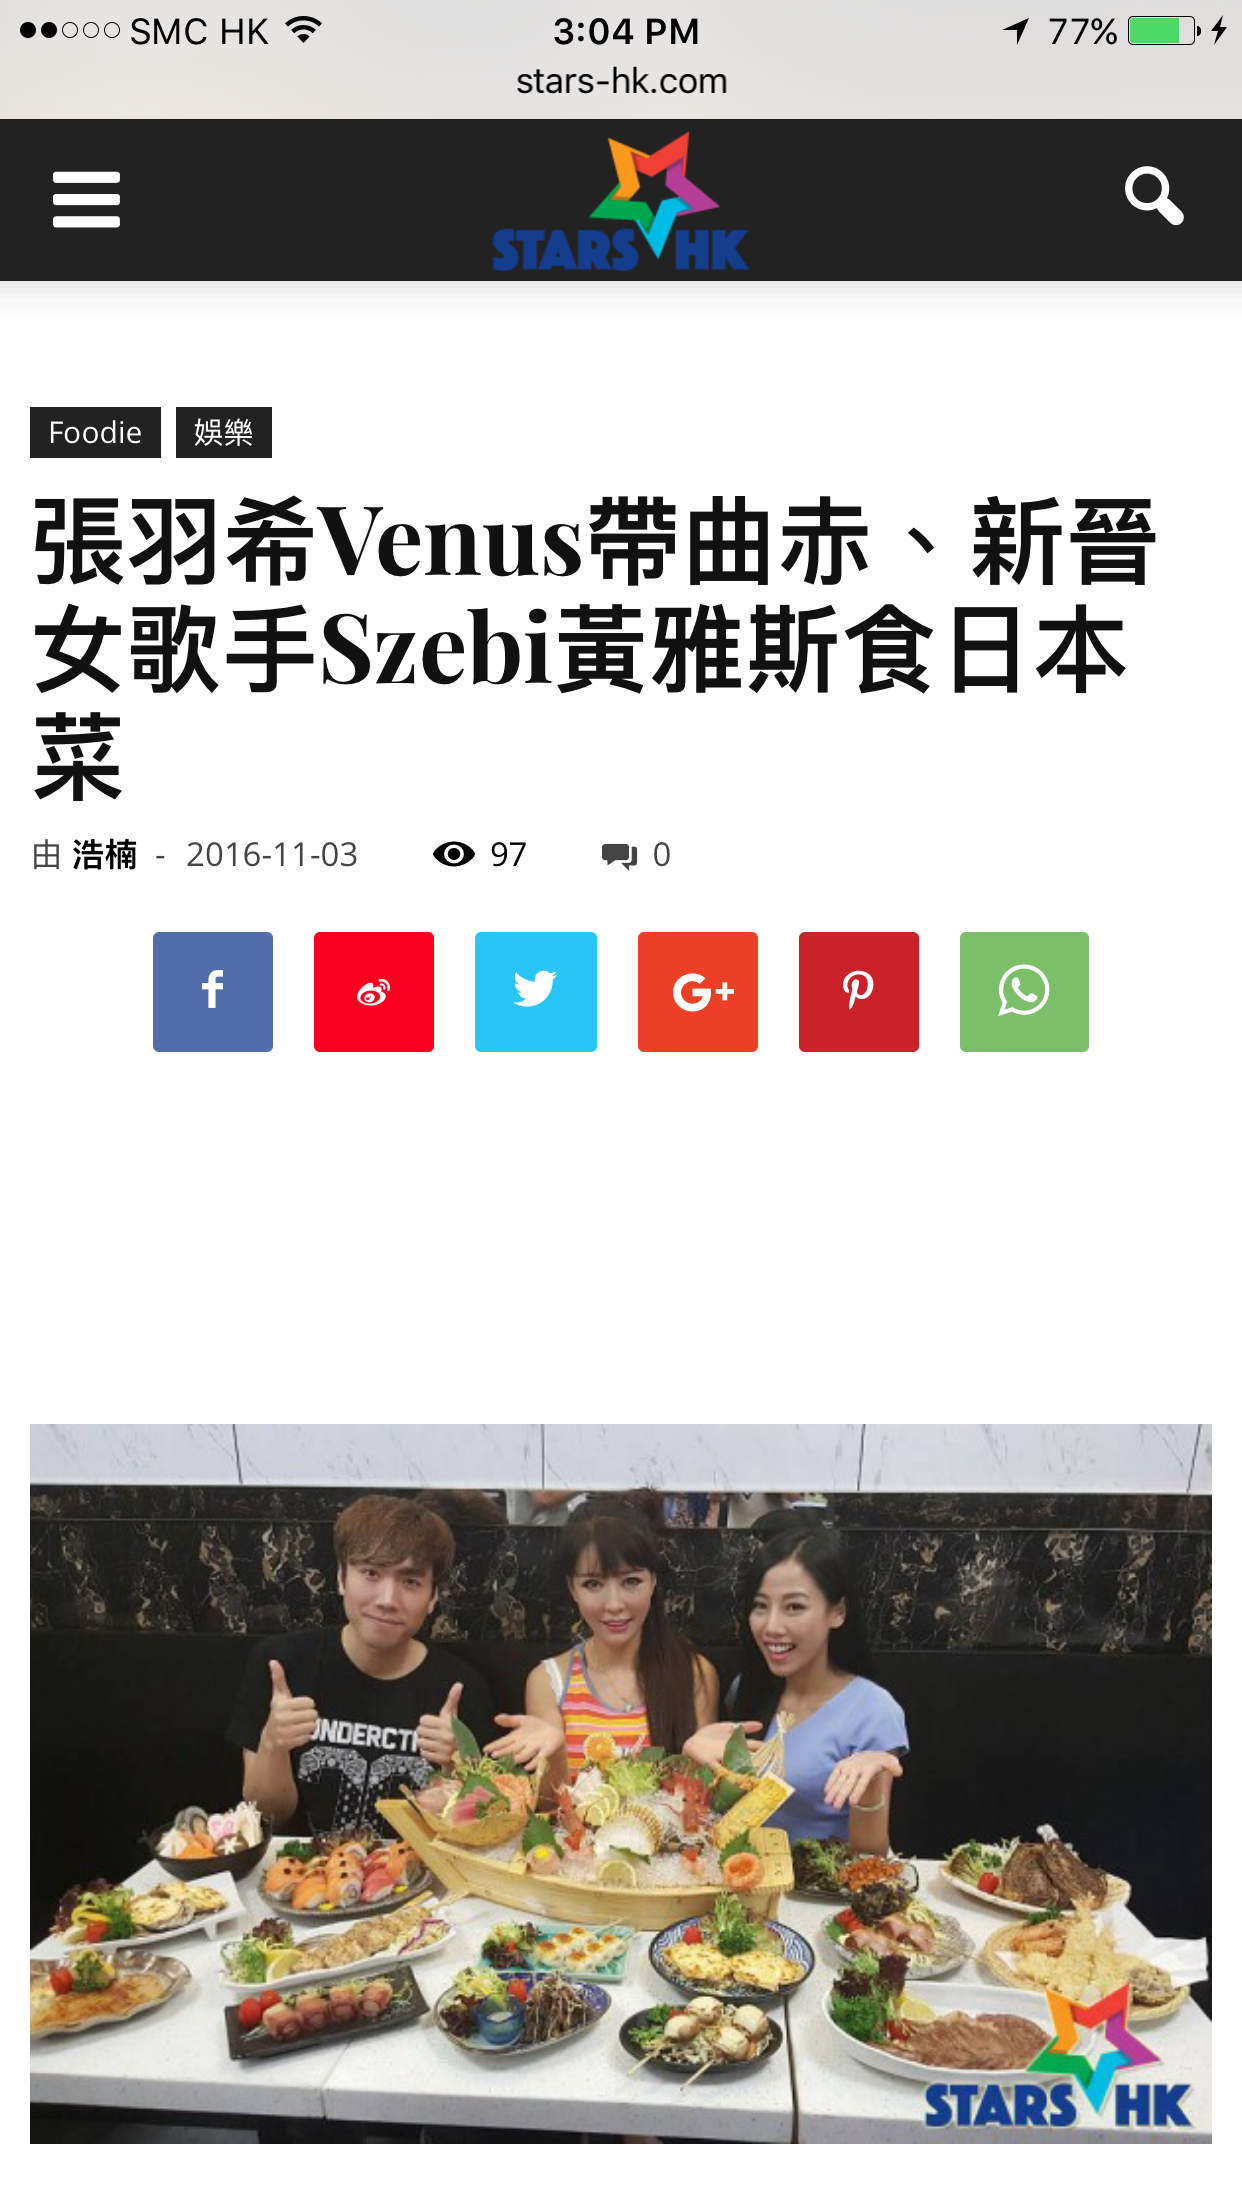 演藝人曲赤 K-CHEK之媒體報導: 張羽希Venus帶曲赤、新晉女歌手Szebi黃雅斯食日本菜